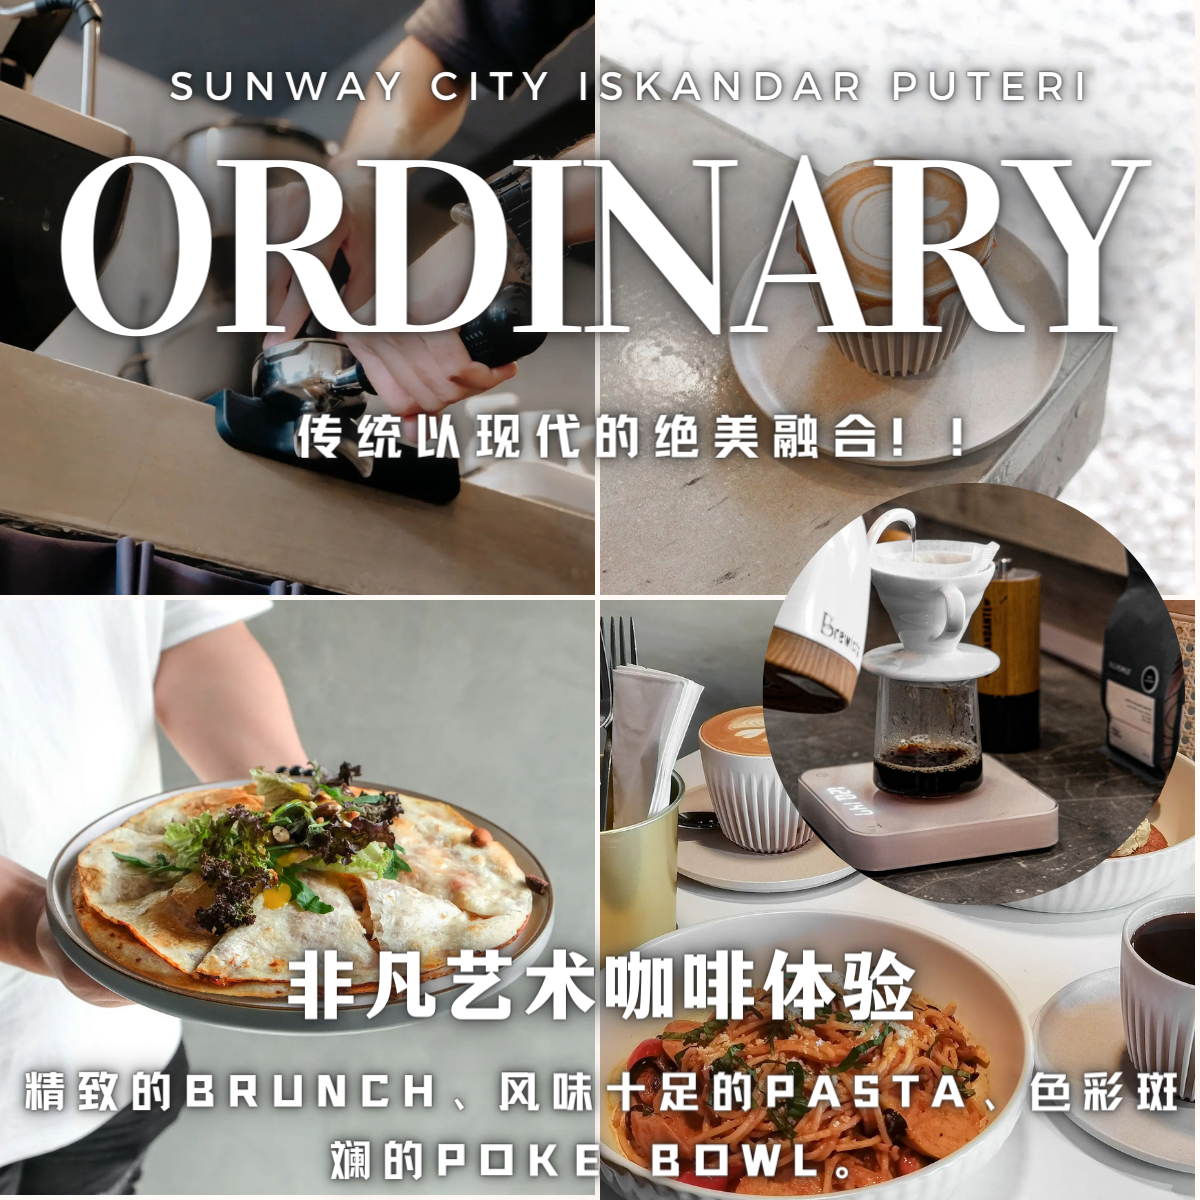 ordinary cafe